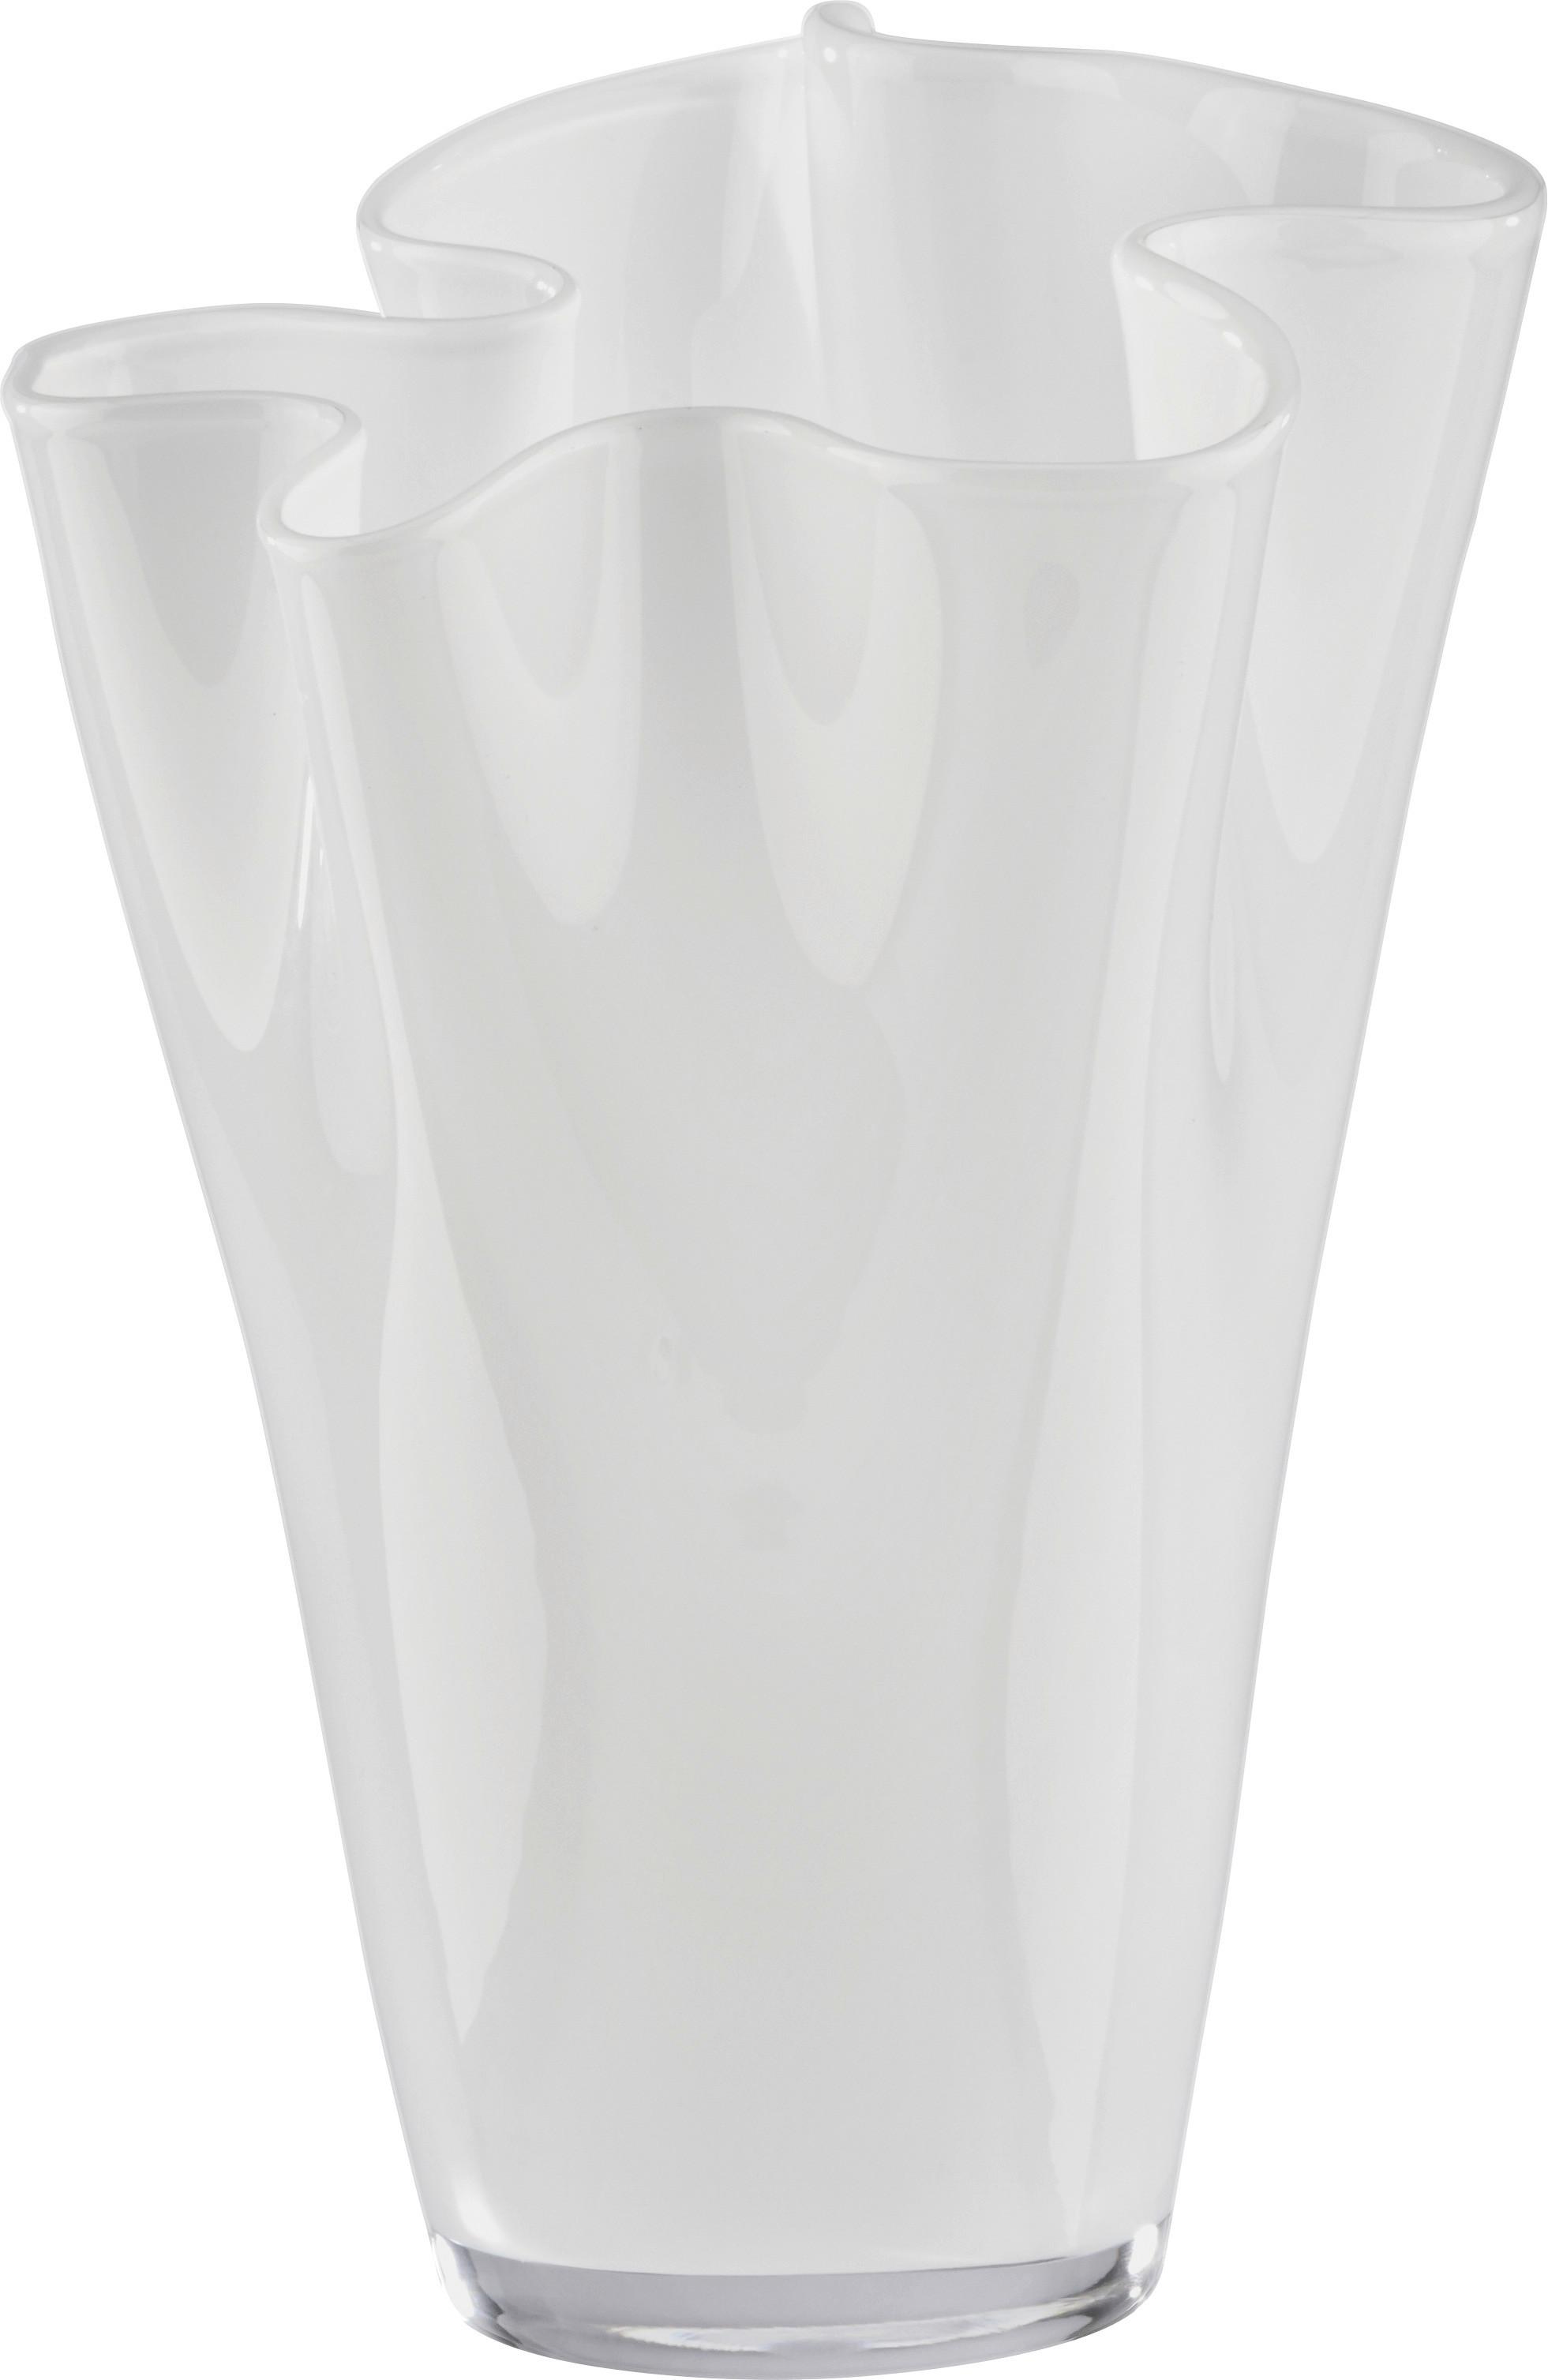 Váza Anika - biela, Moderný, sklo (18/25cm) - Modern Living